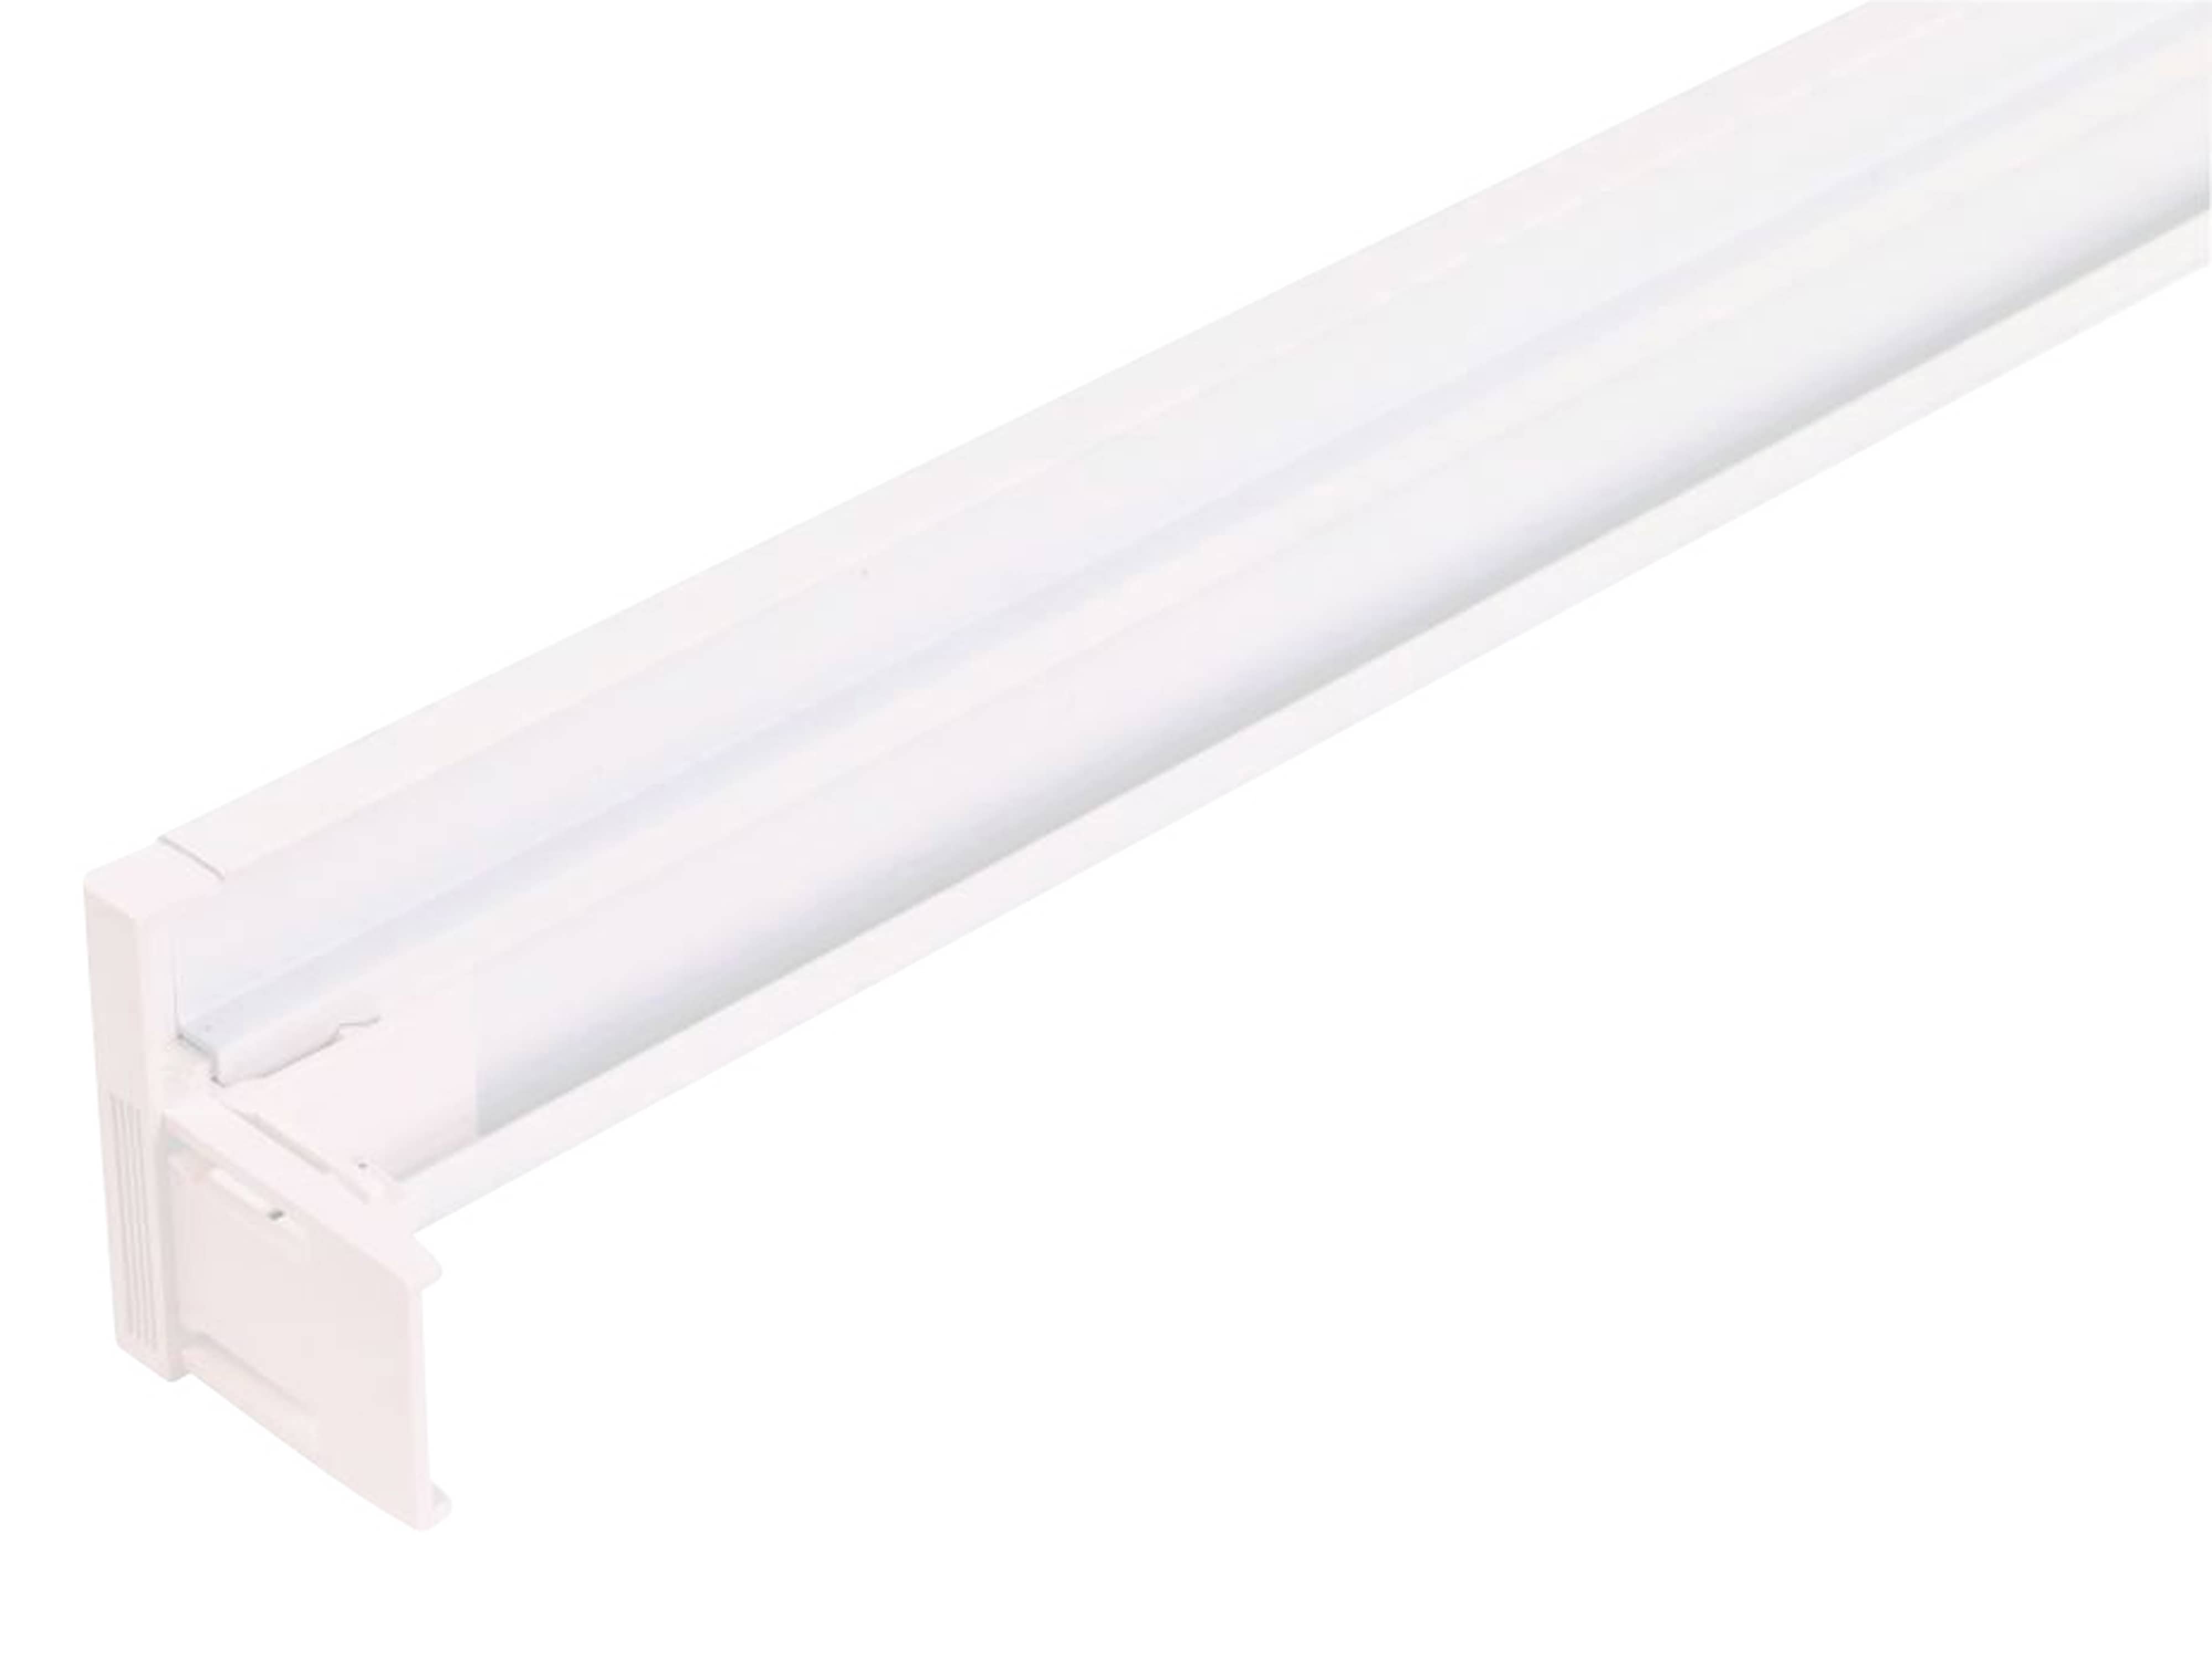 LUXULA LED-Panel Aufbaurahmen LX0716, 120x30 cm, steckbar, weiß